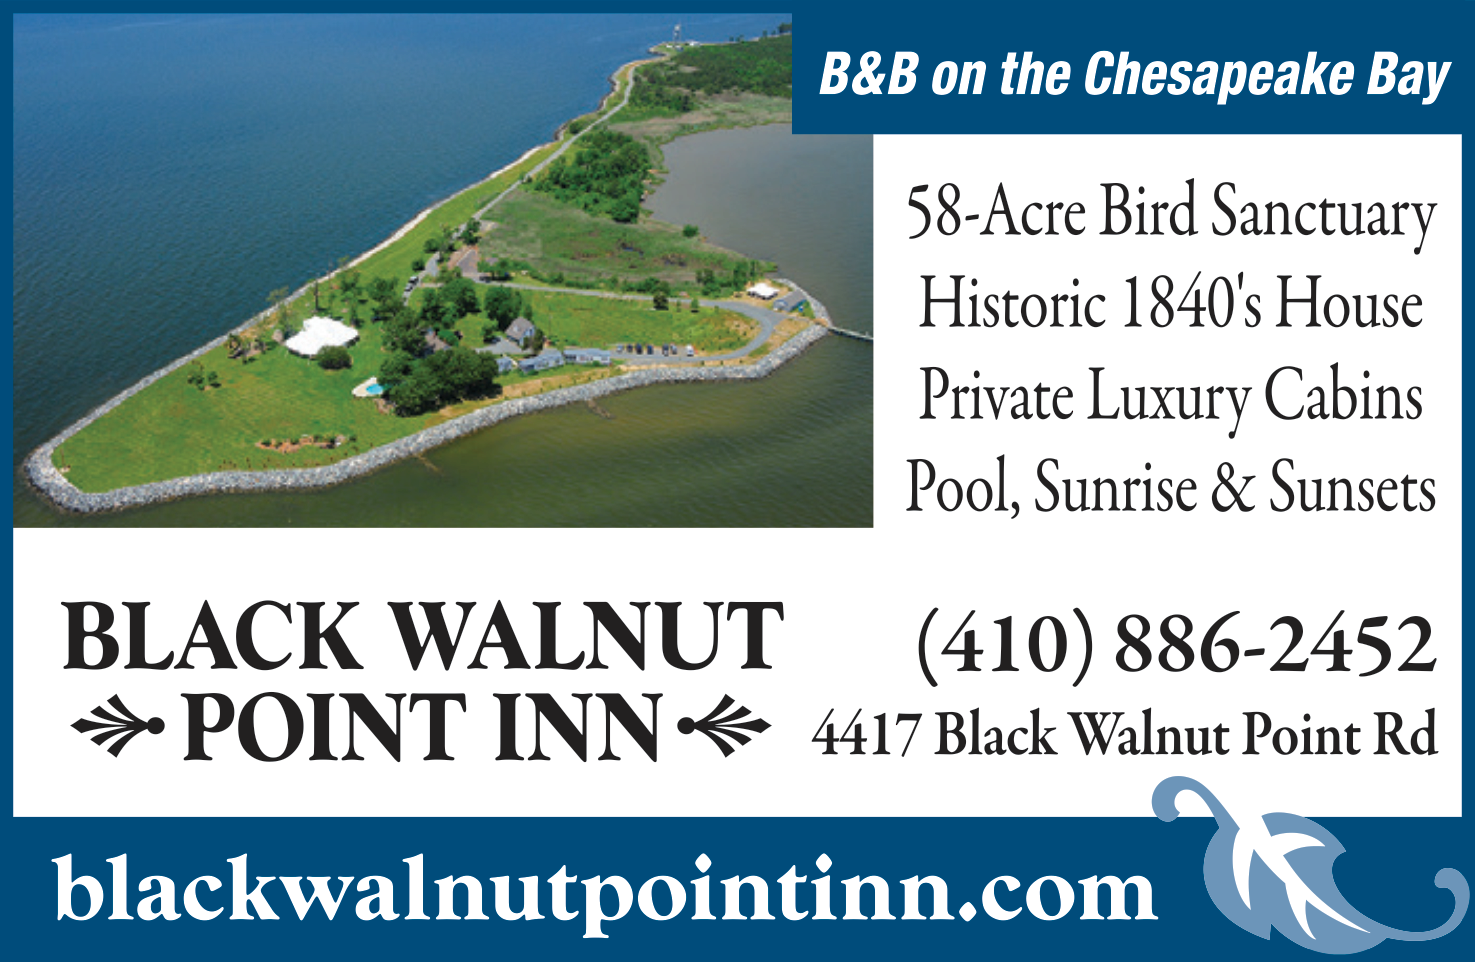 Black Walnut Point Inn Bed & Breakfast Print Ad